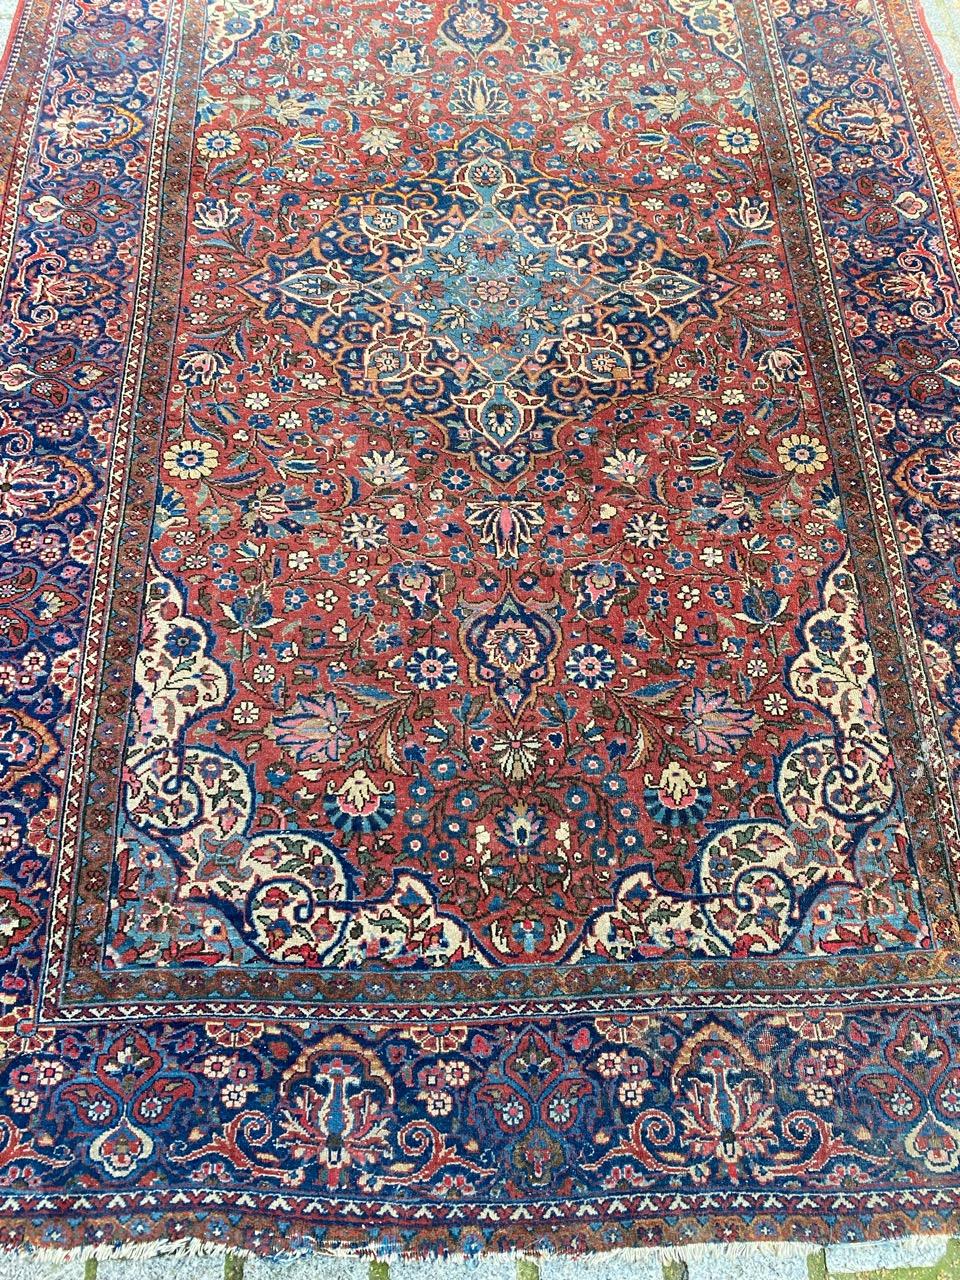 Sehr schöner Kashan-Teppich aus dem frühen 20. Jahrhundert mit schönem klassischem Blumenmuster und schönen natürlichen Farben, vollständig und fein handgeknüpft mit Wollsamt auf Baumwollgrund.

✨✨✨
